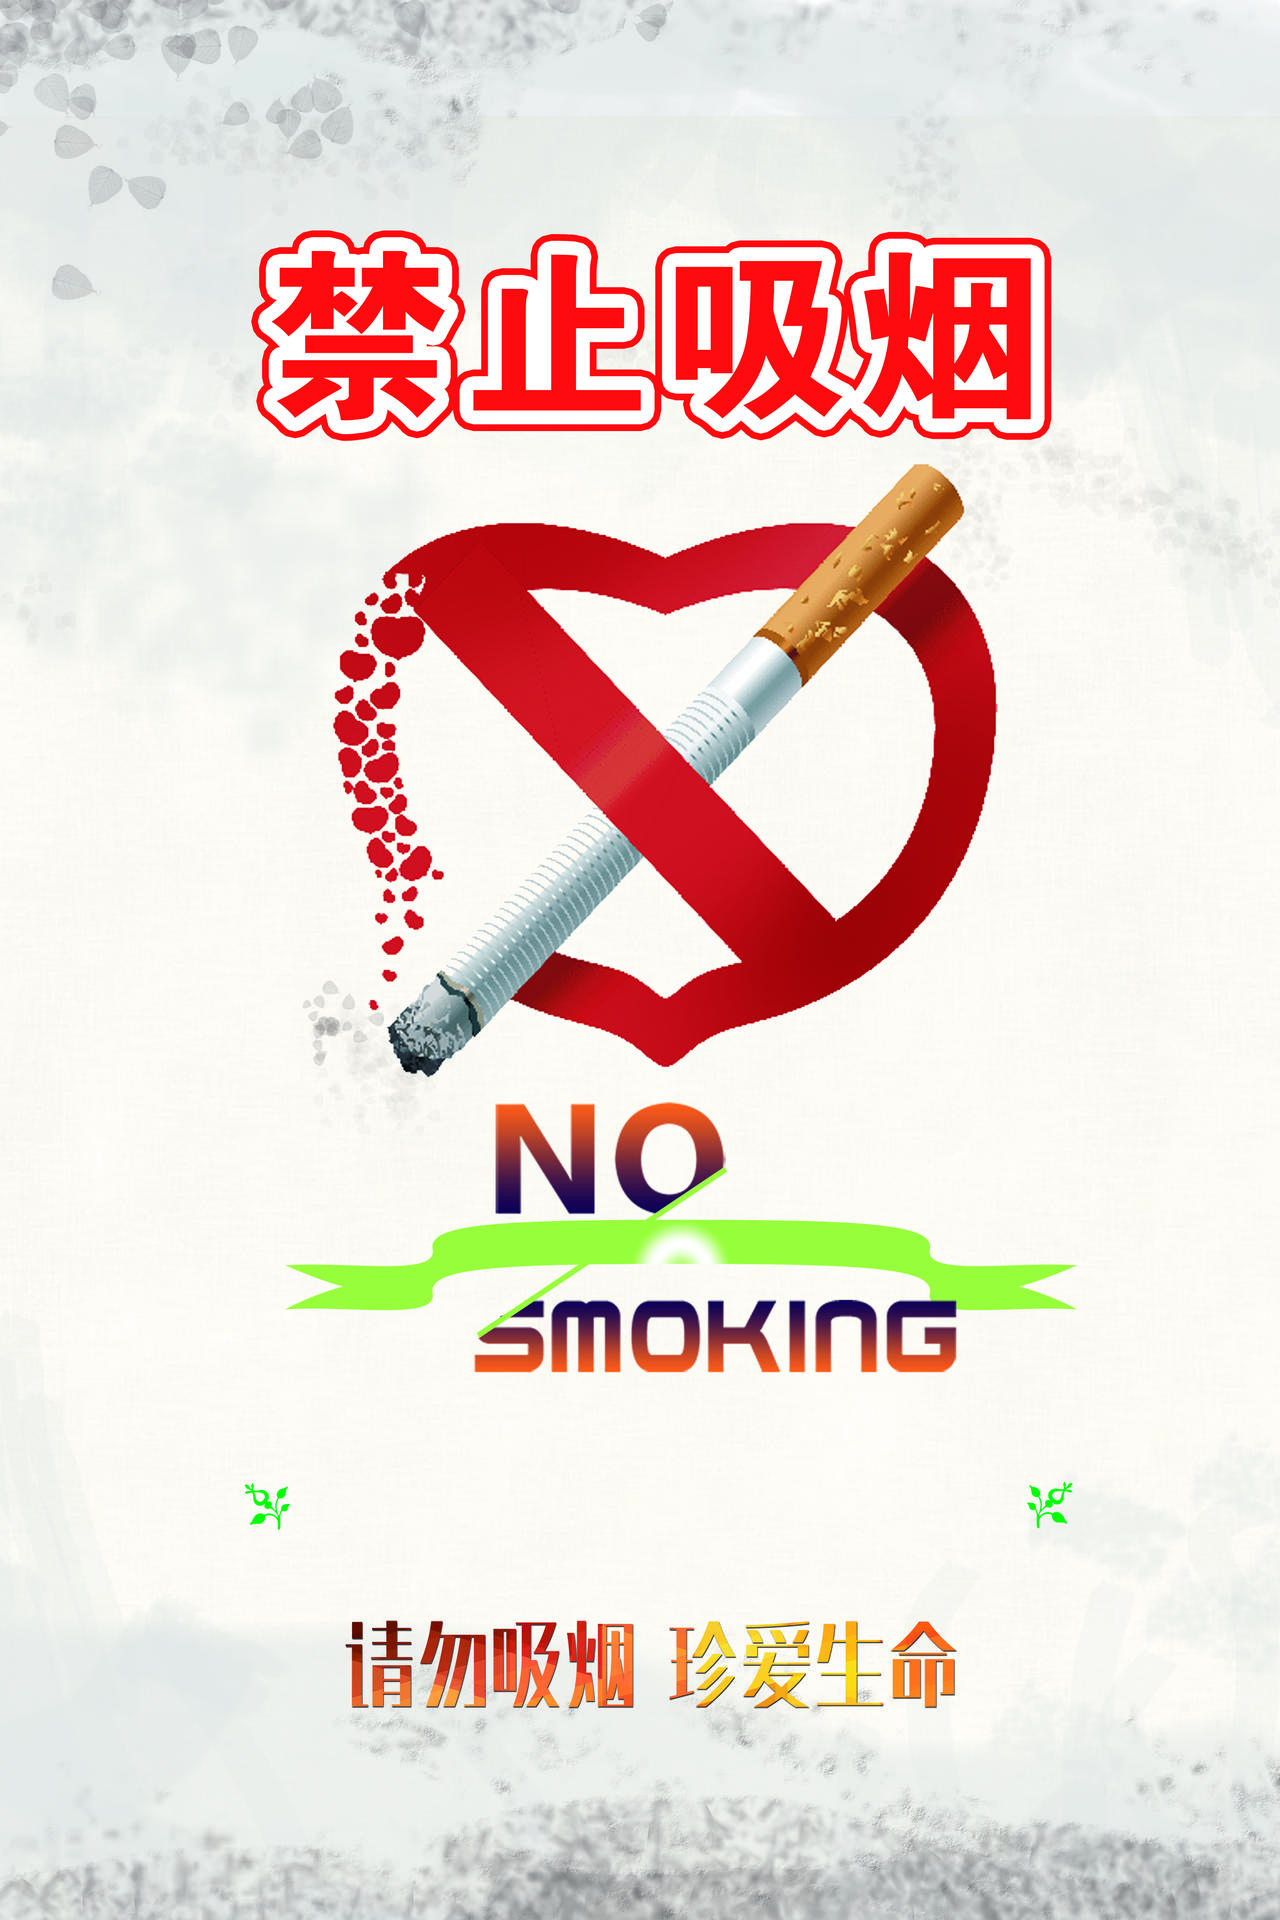 白色背景公益广告请别吸烟宣传海报图